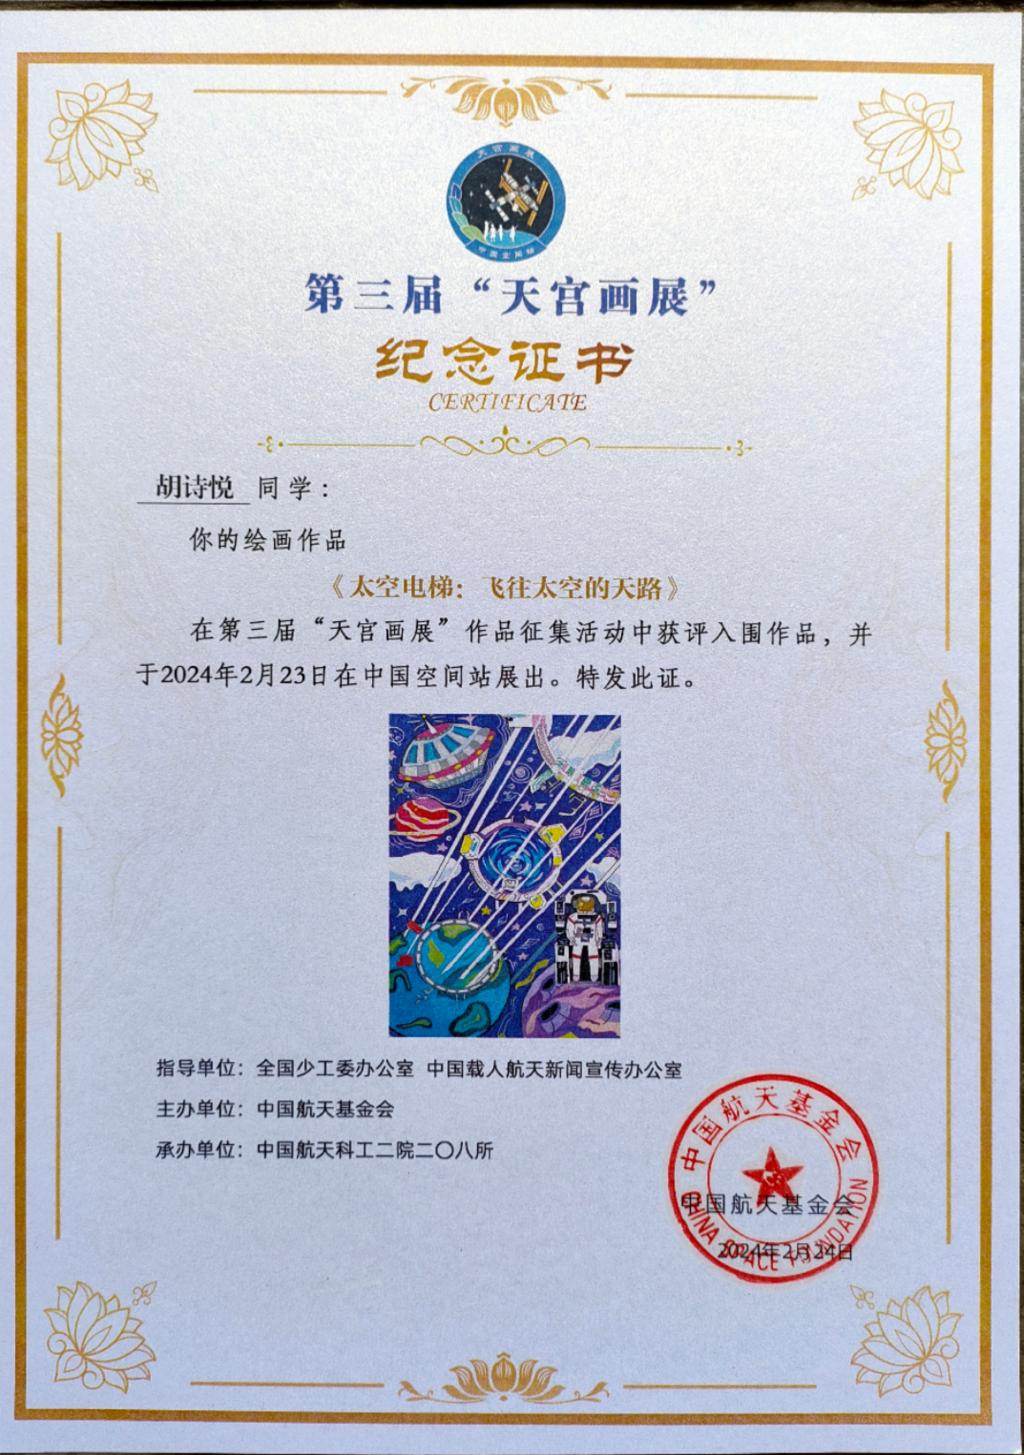 胡诗悦收到的纪念证书。受访者供图